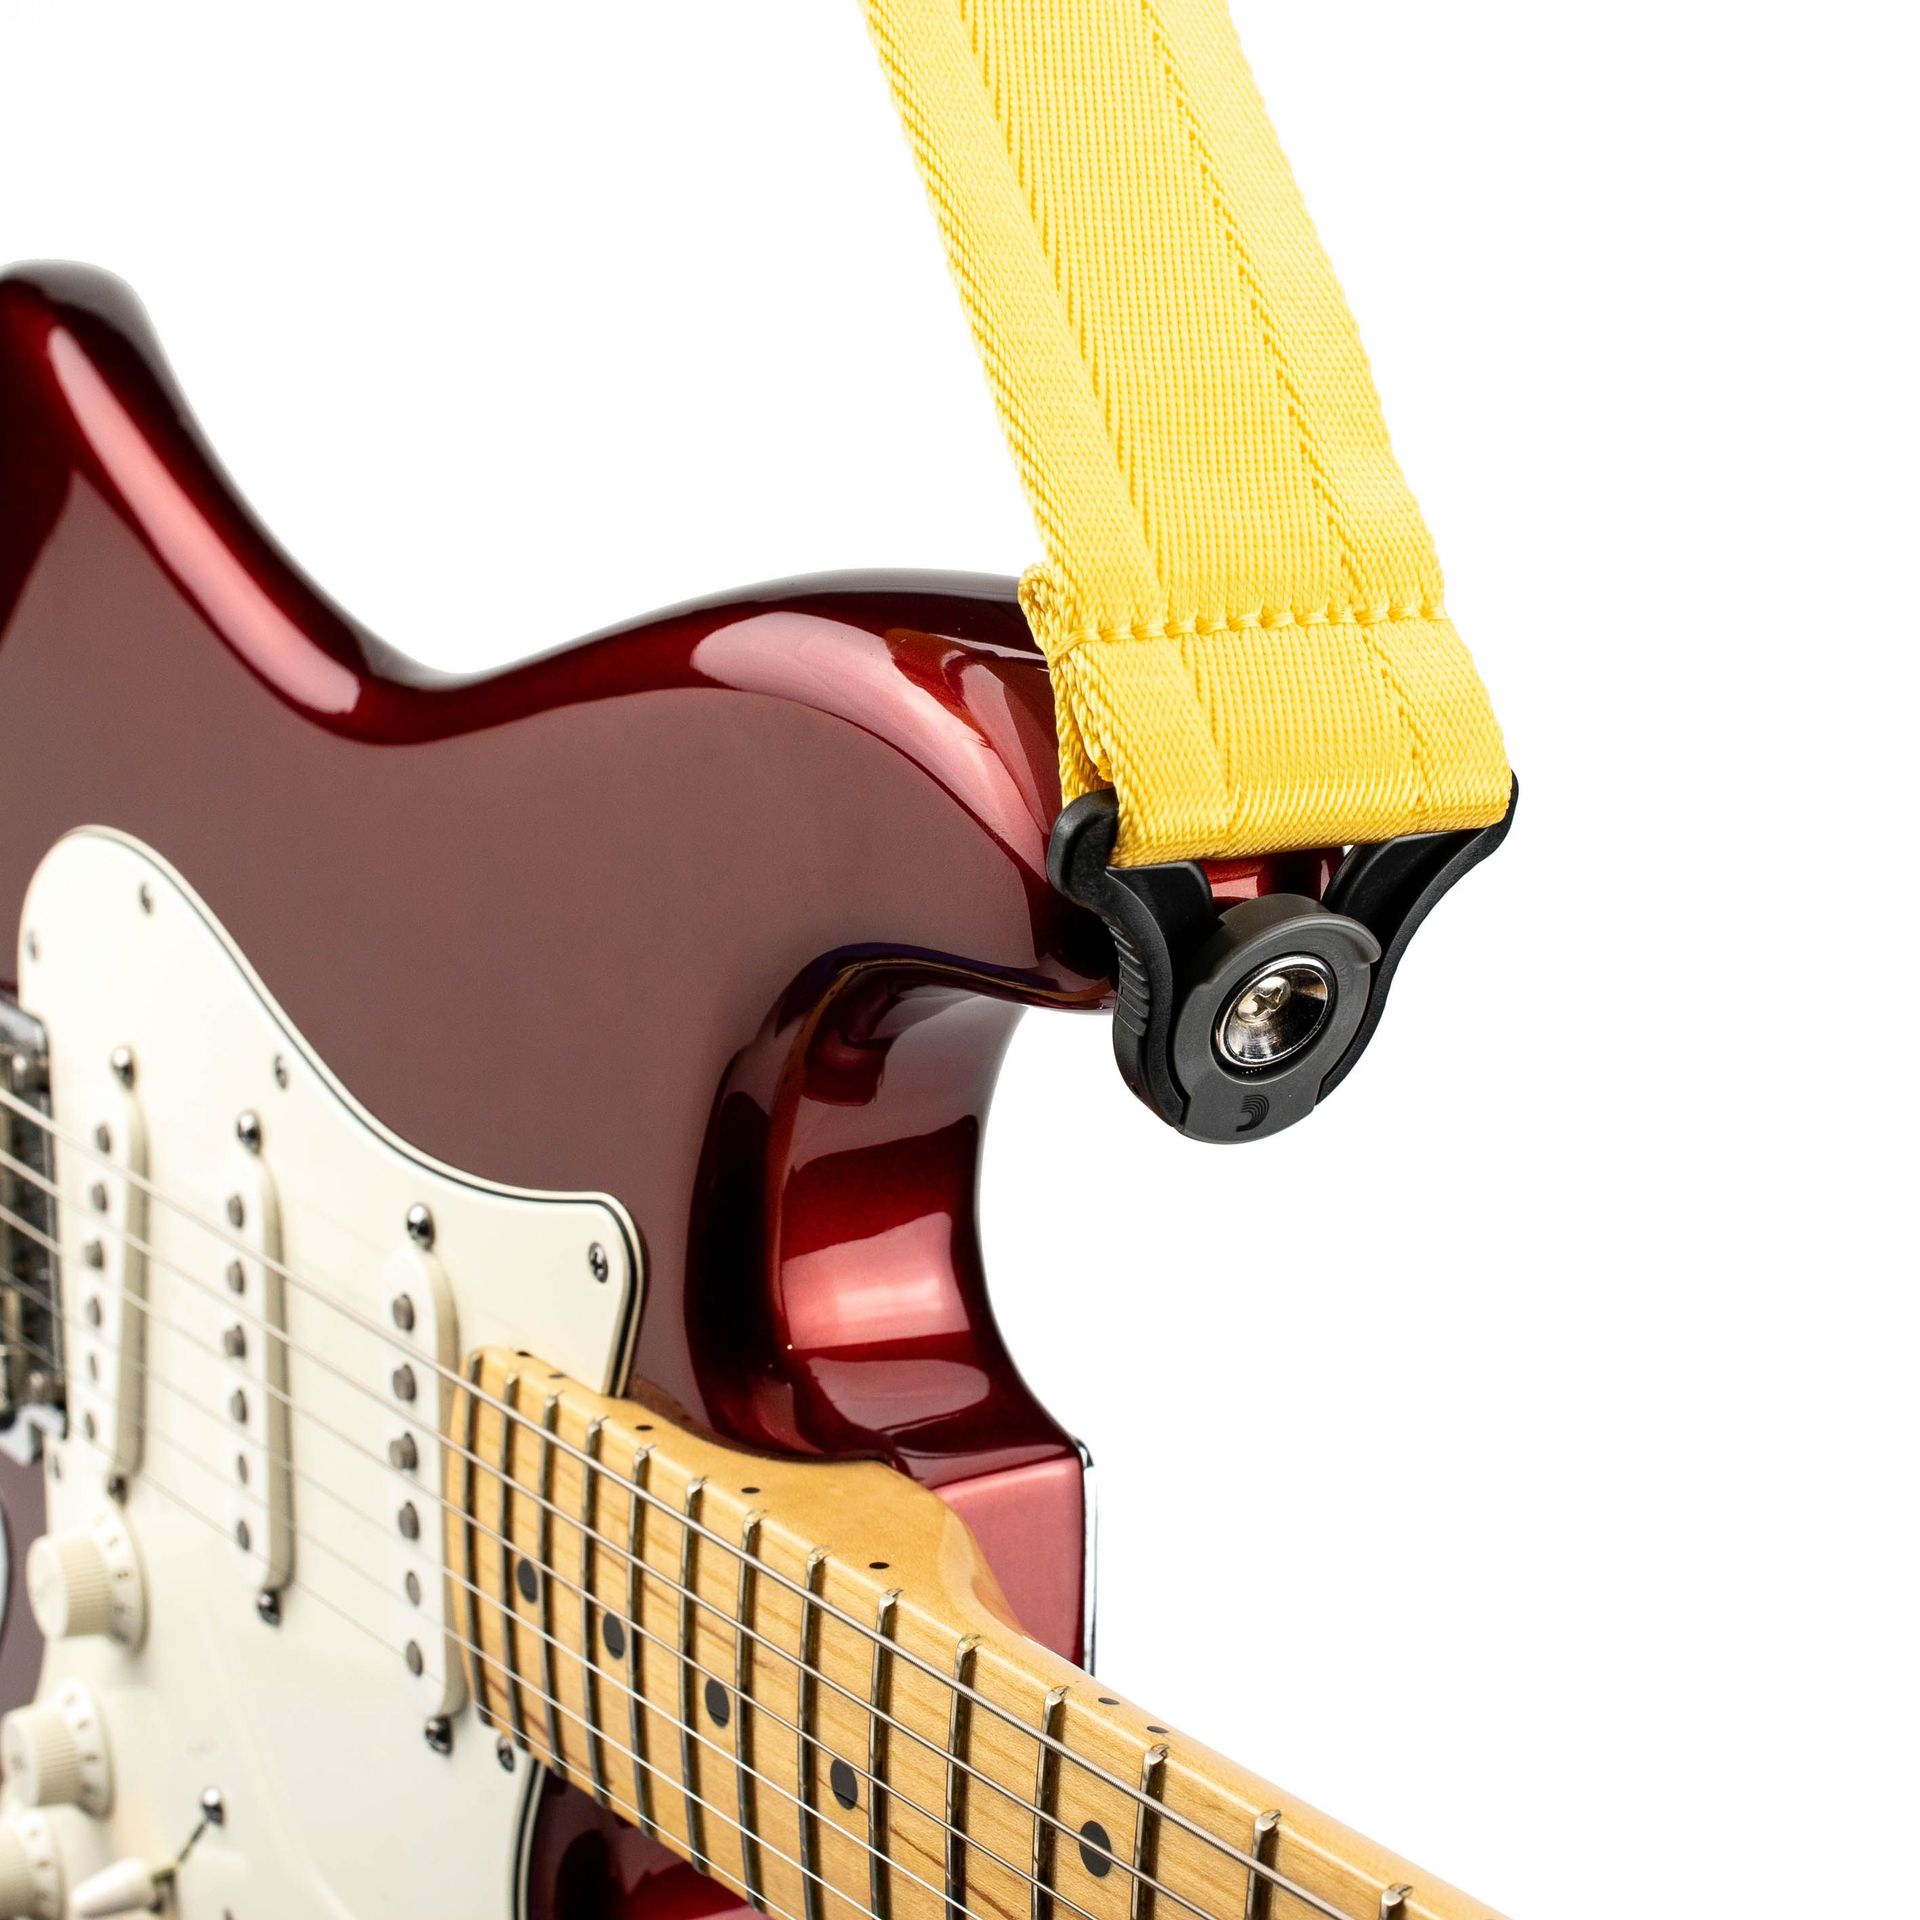 D’Addario Auto Lock Guitar Strap Mellow Yellow 50BAL07